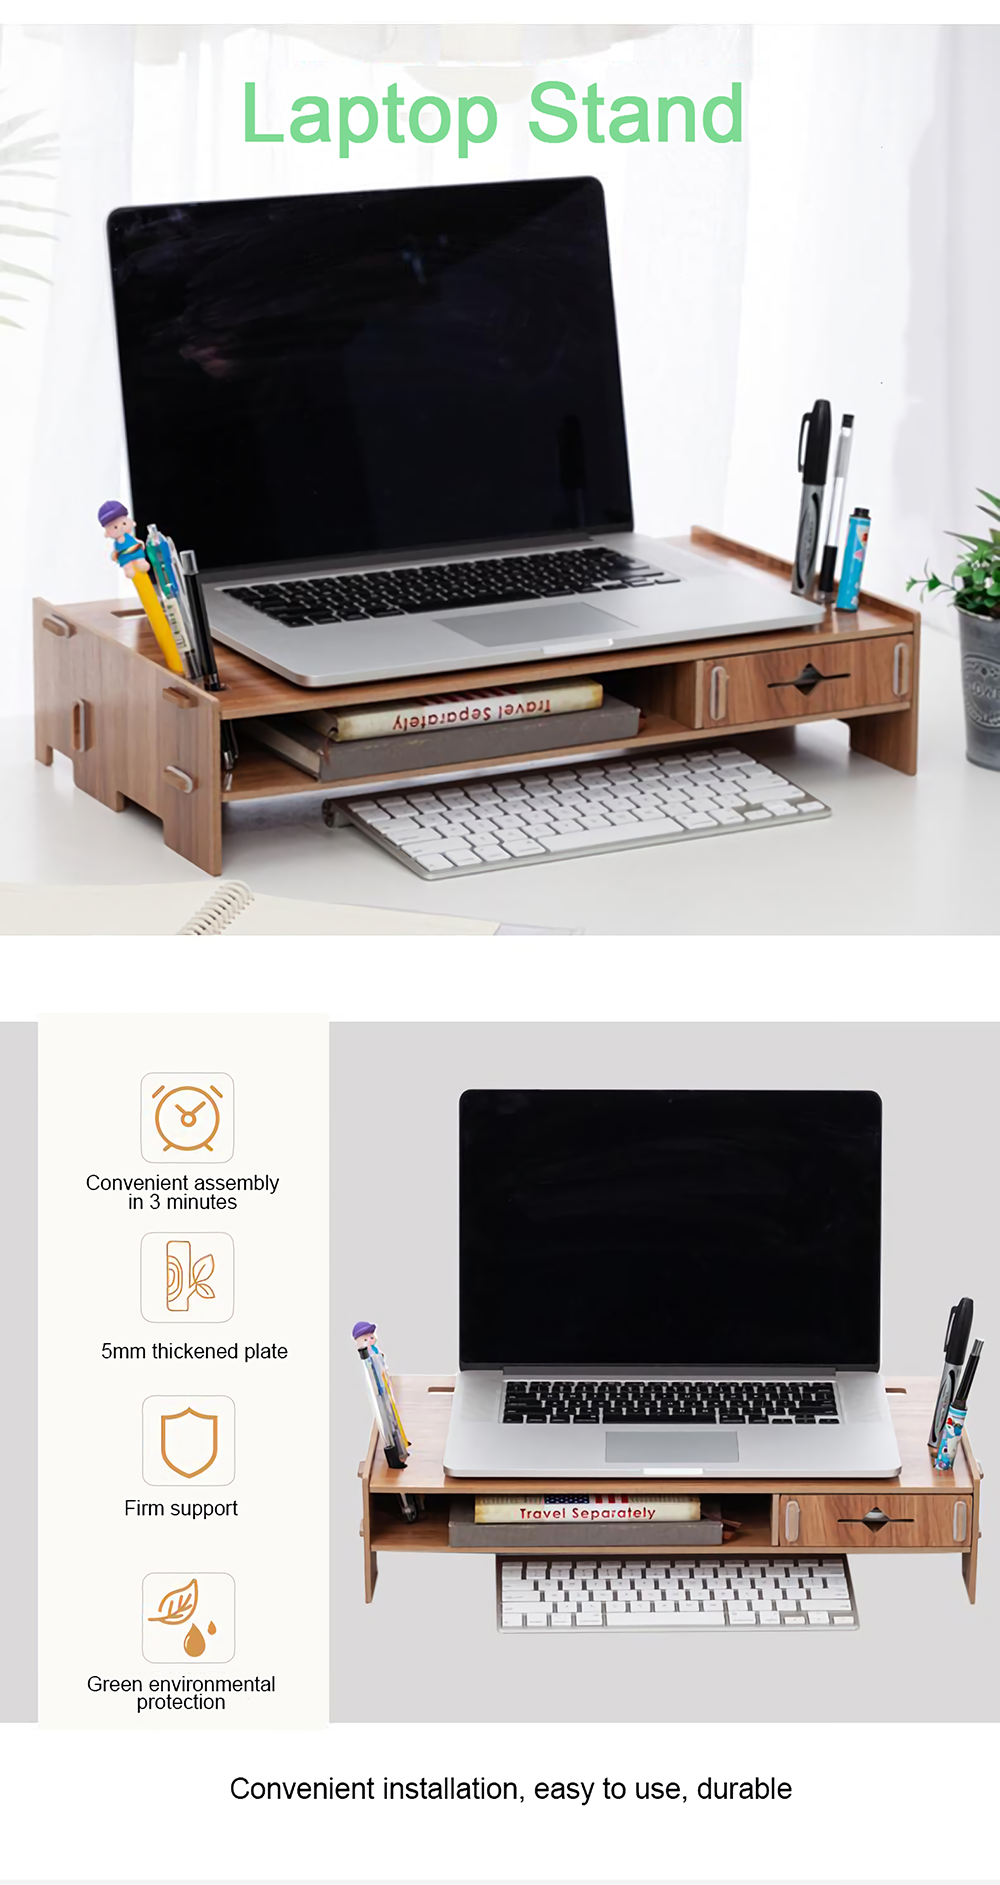 DIY-Wooden-Computer-Laptop-Stand-Holder-Monitor-Riser-Desk-Organizer-Stand-Base-with-Storage-Organiz-1801670-1